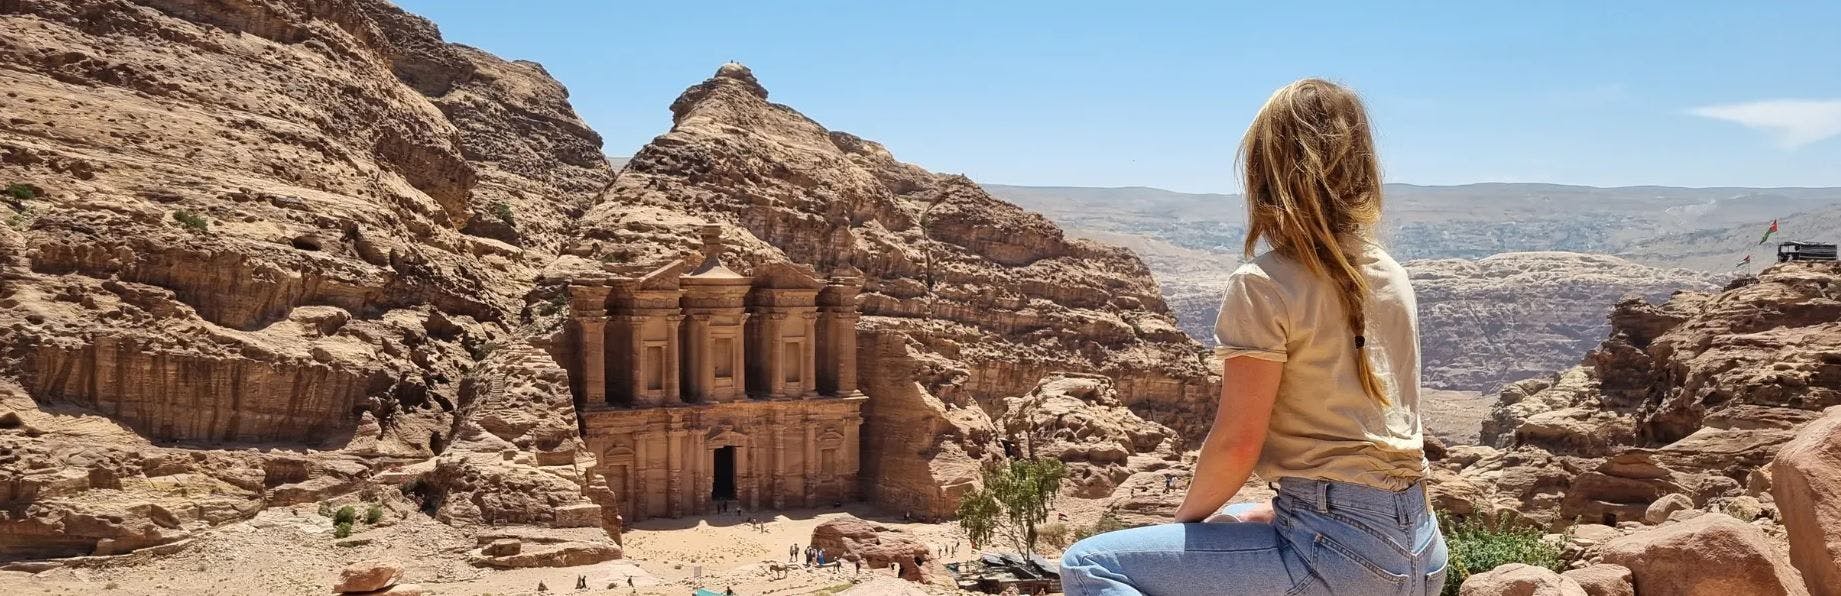 Jordanie Petra met reiziger